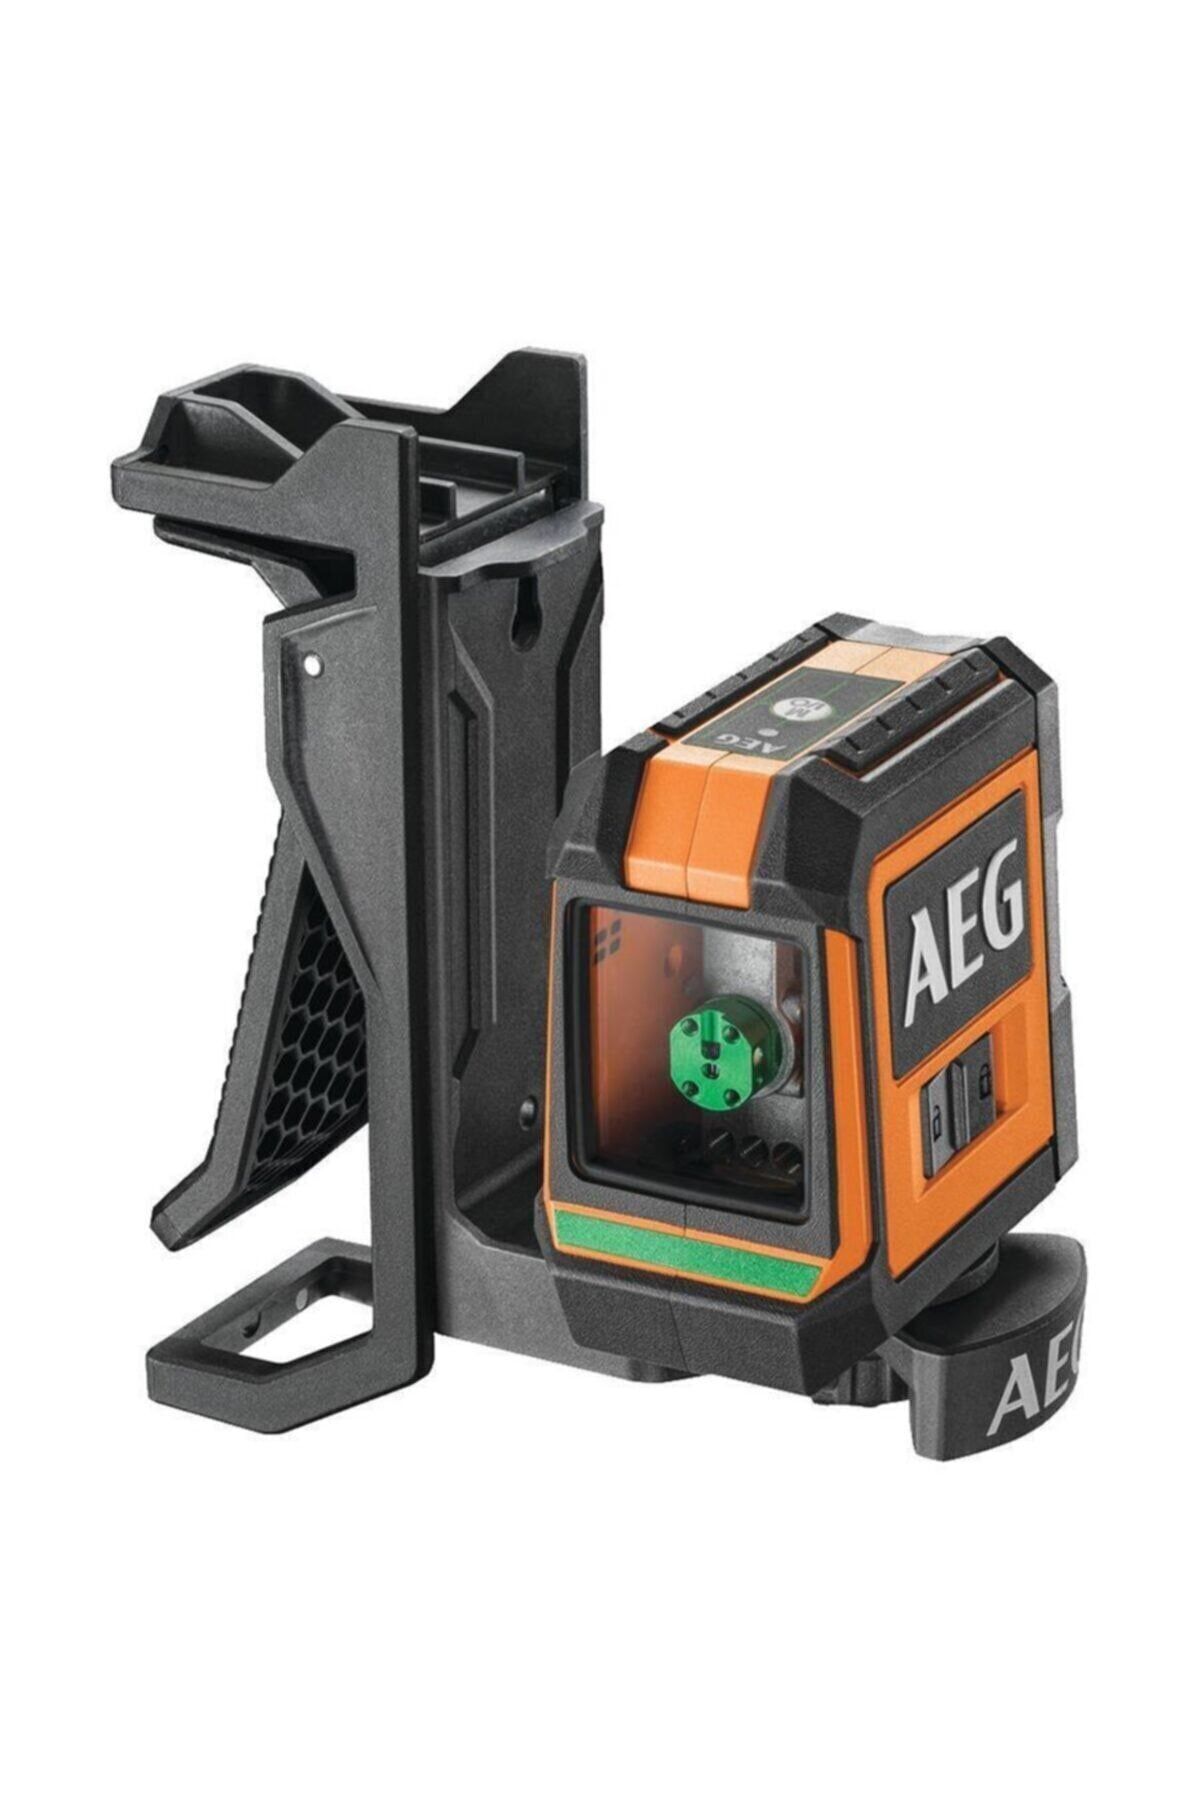 AEG Clg220-b Çizgili Yeşil Lazer Metre